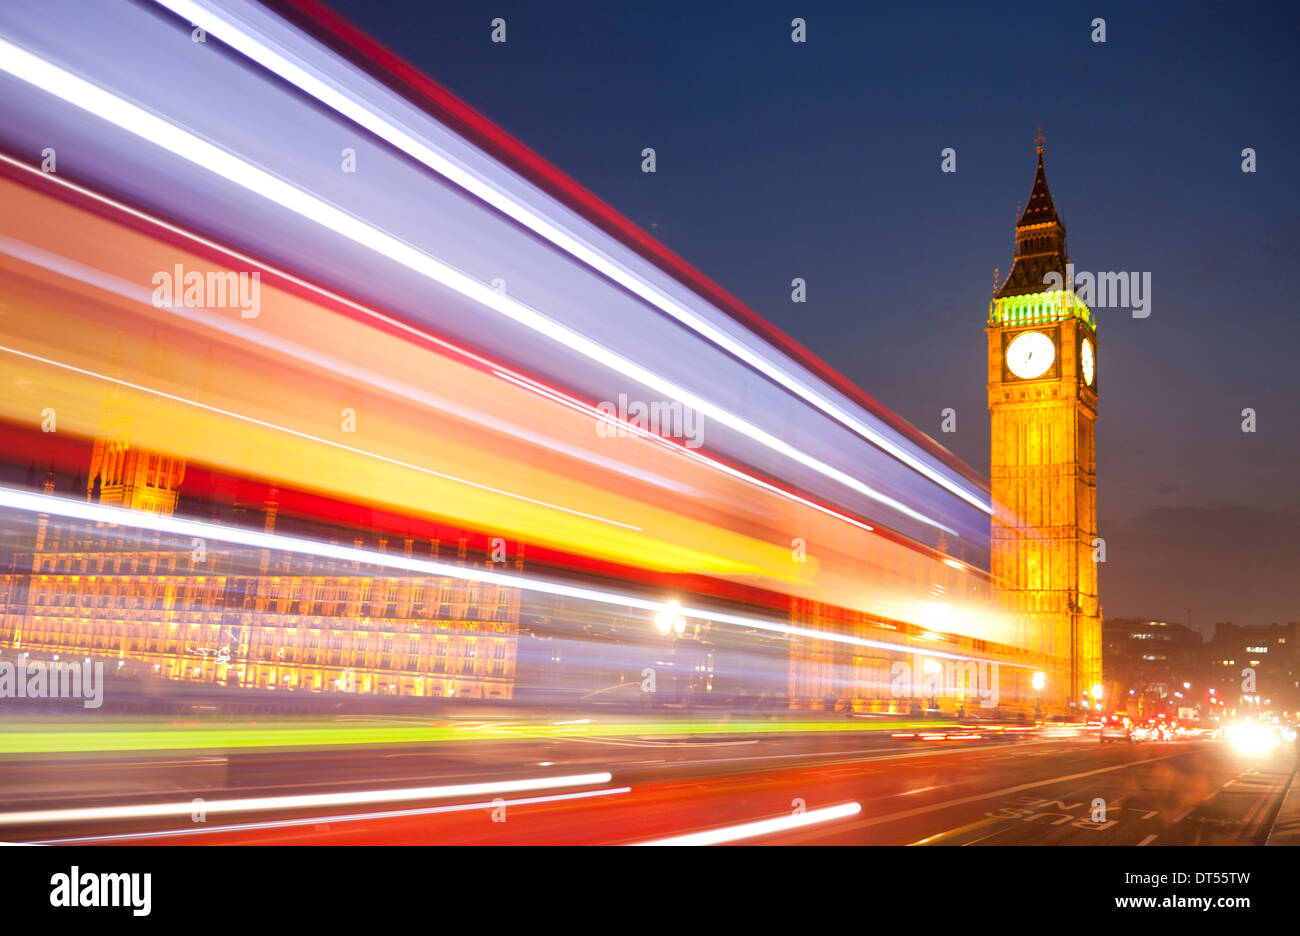 Big Ben Clock Tower Chambres du Parlement de nuit avec lumières floues de passer en premier plan bus red London London England UK Banque D'Images